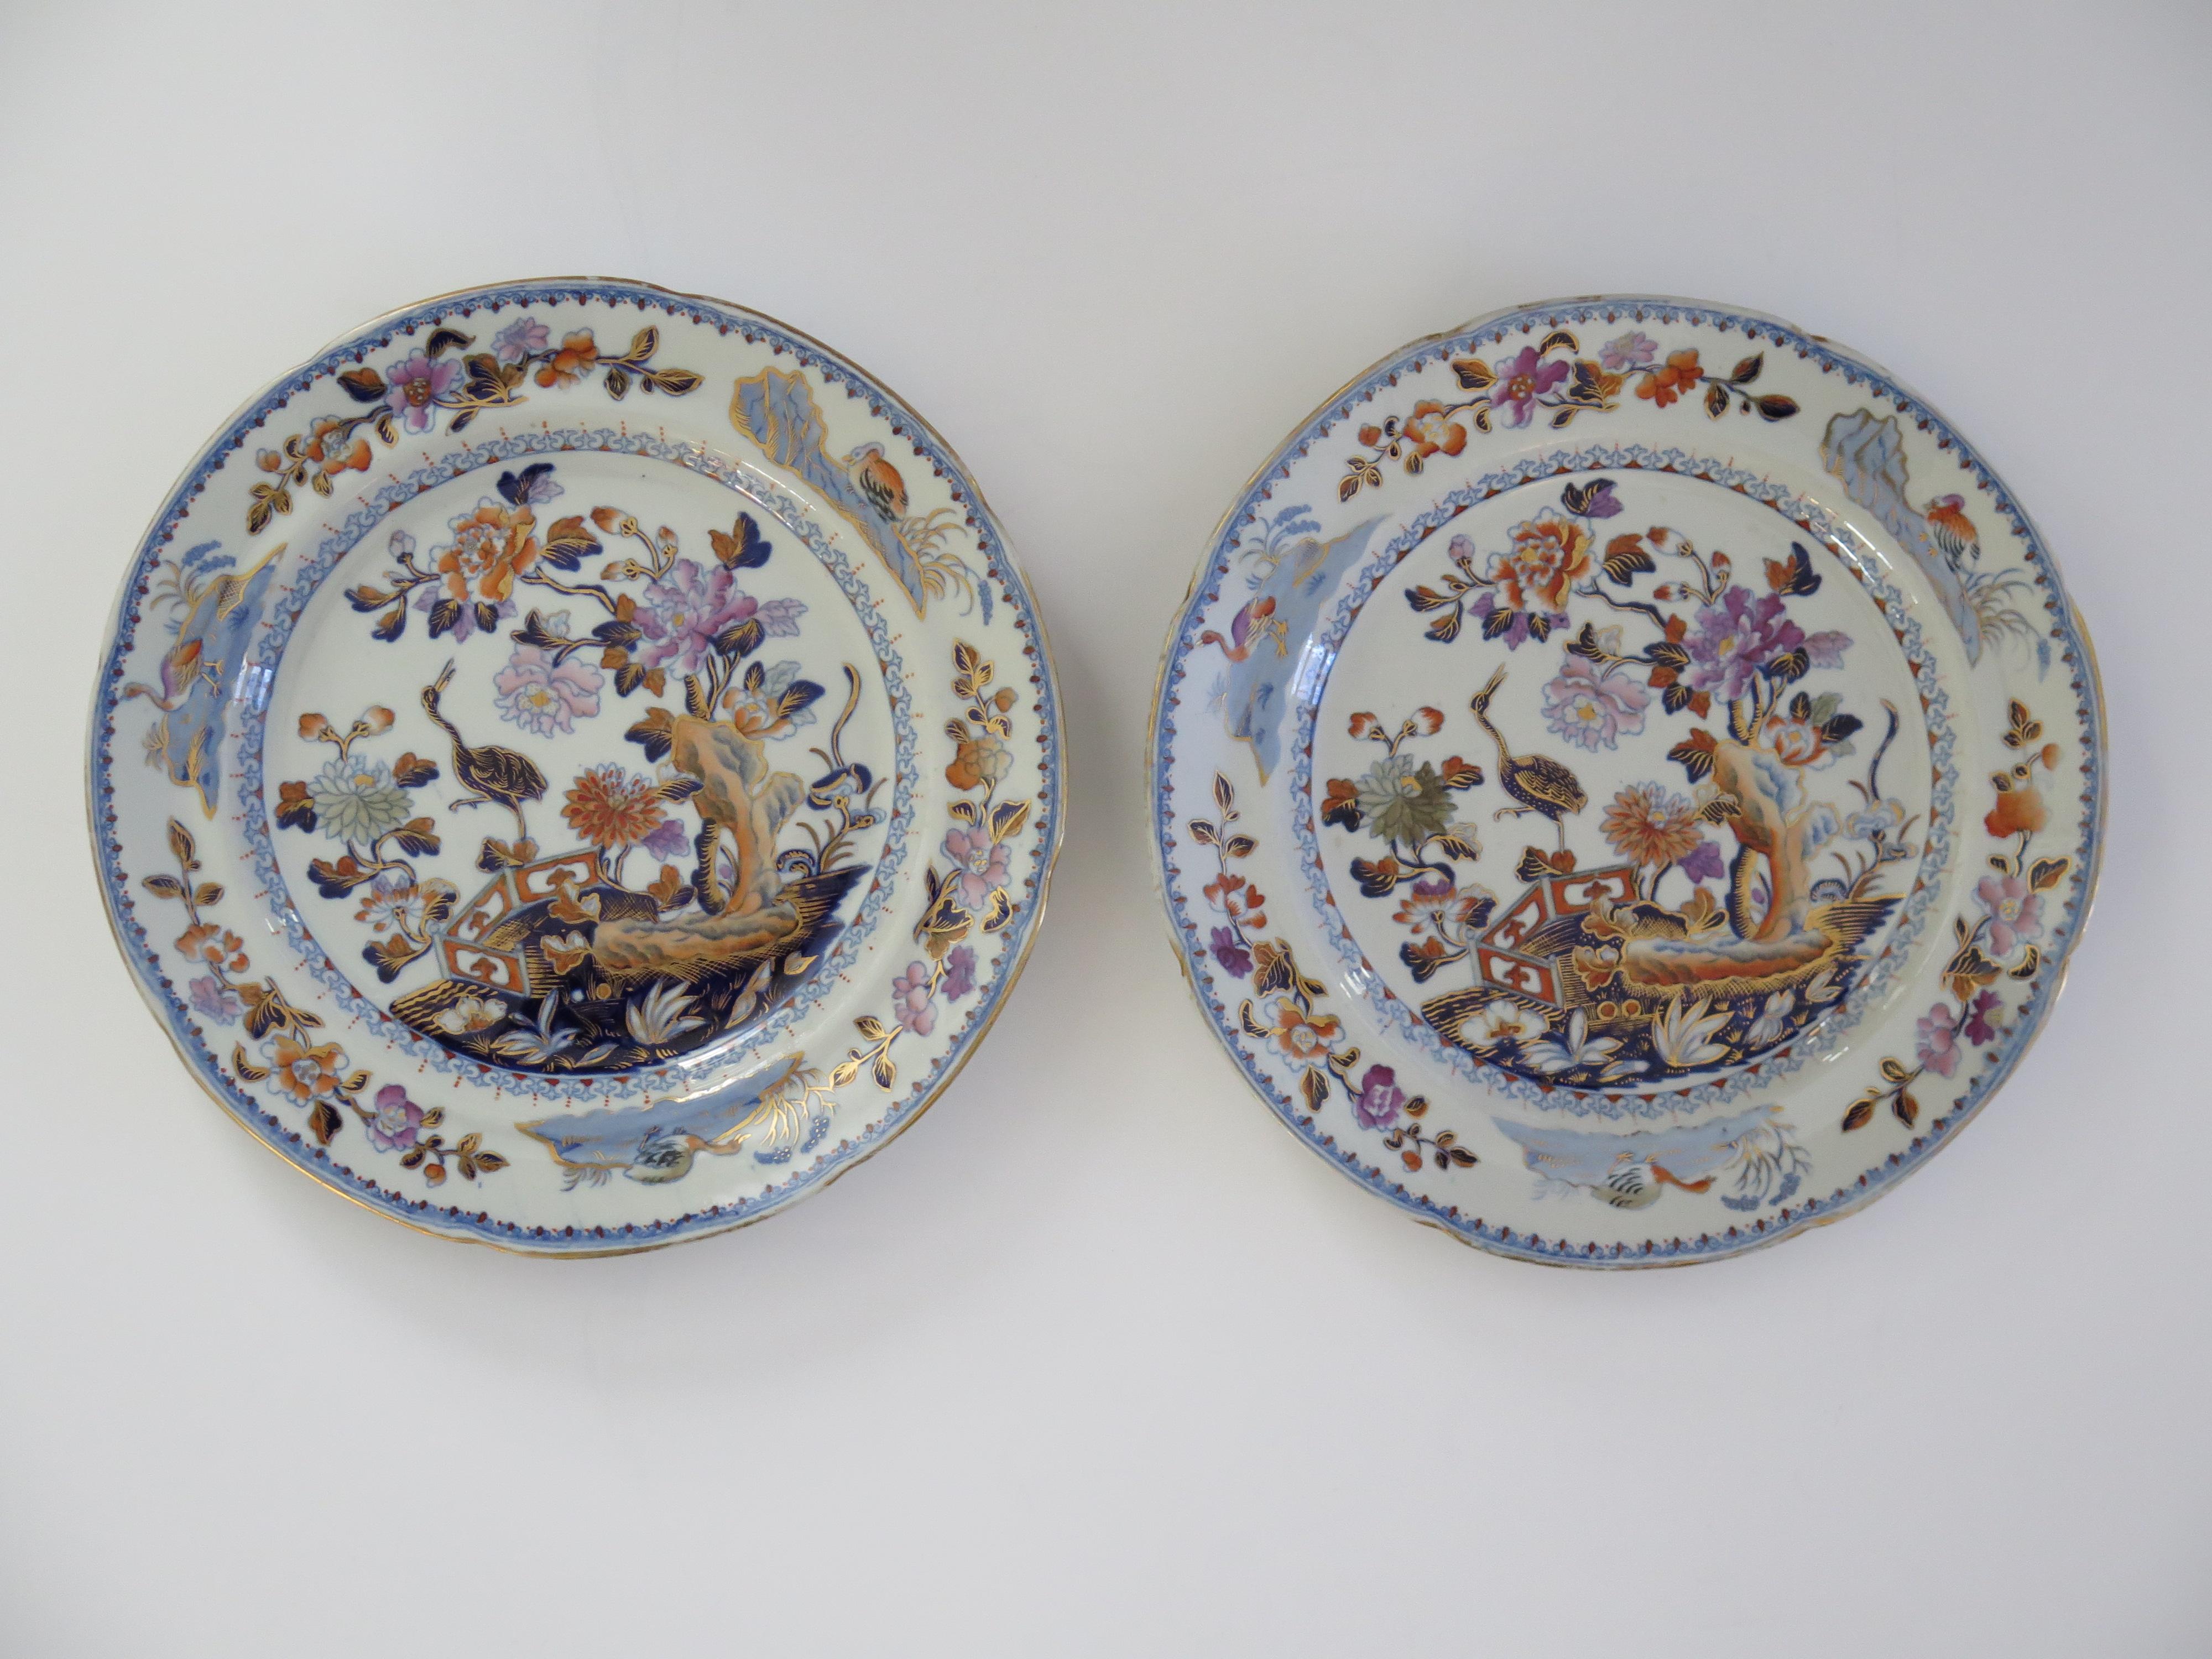 Il s'agit d'une paire d'assiettes d'accompagnement ou de dessert en pierre de Chine (Ironstone) finement peintes à la main, datant de la période George 111, vers 1815. Fabriqué par l'usine DAVENPORT de Longport, Staffordshire Potteries,